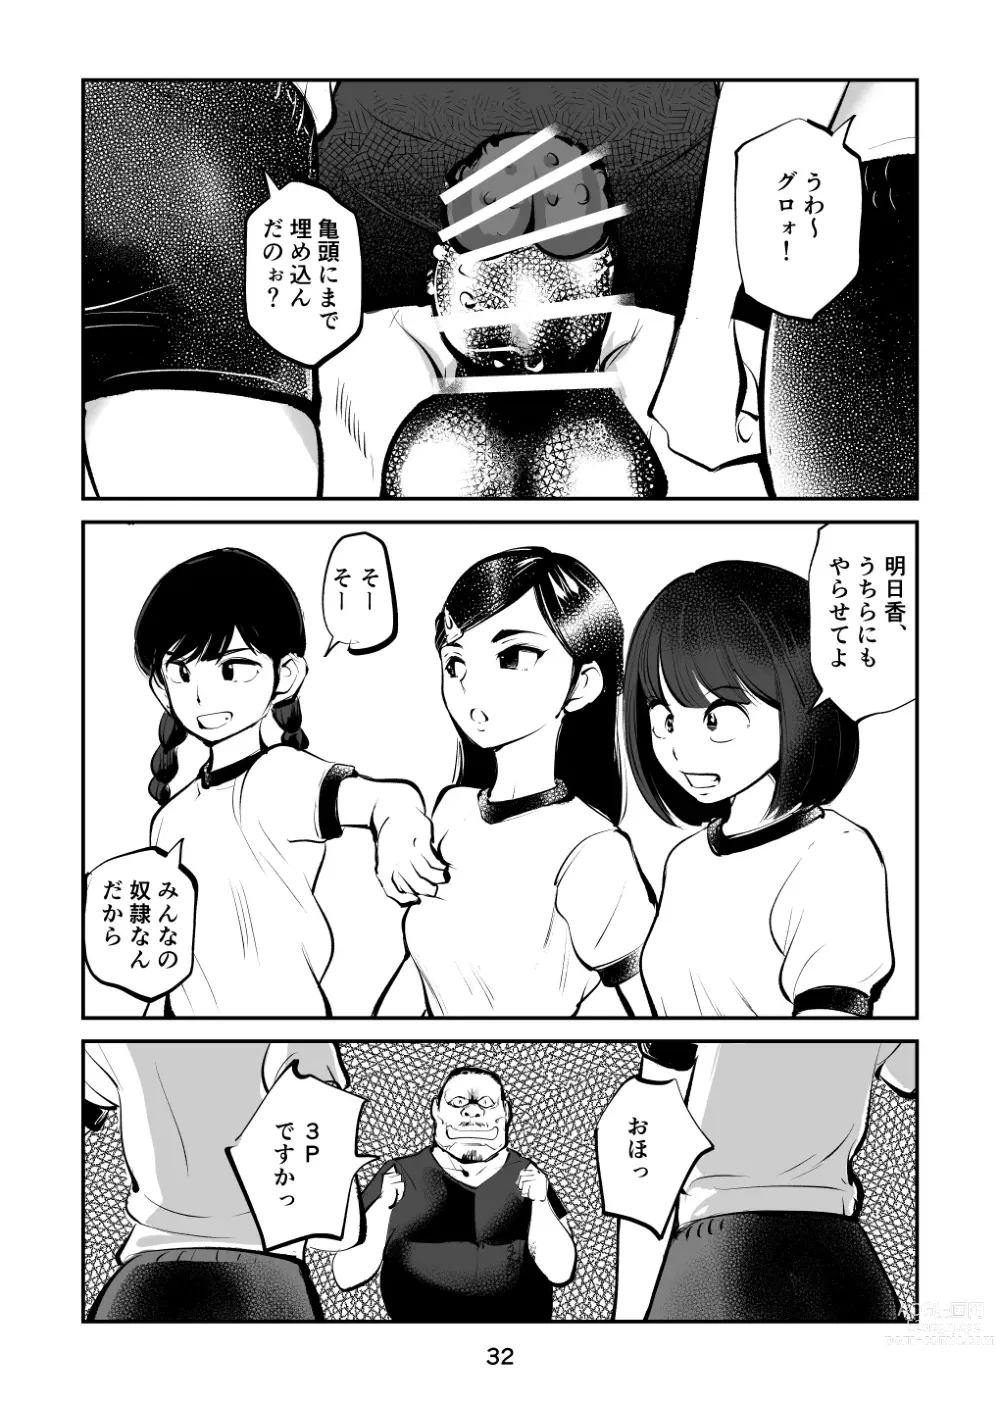 Page 32 of doujinshi Chinpo Shiikukakari 4